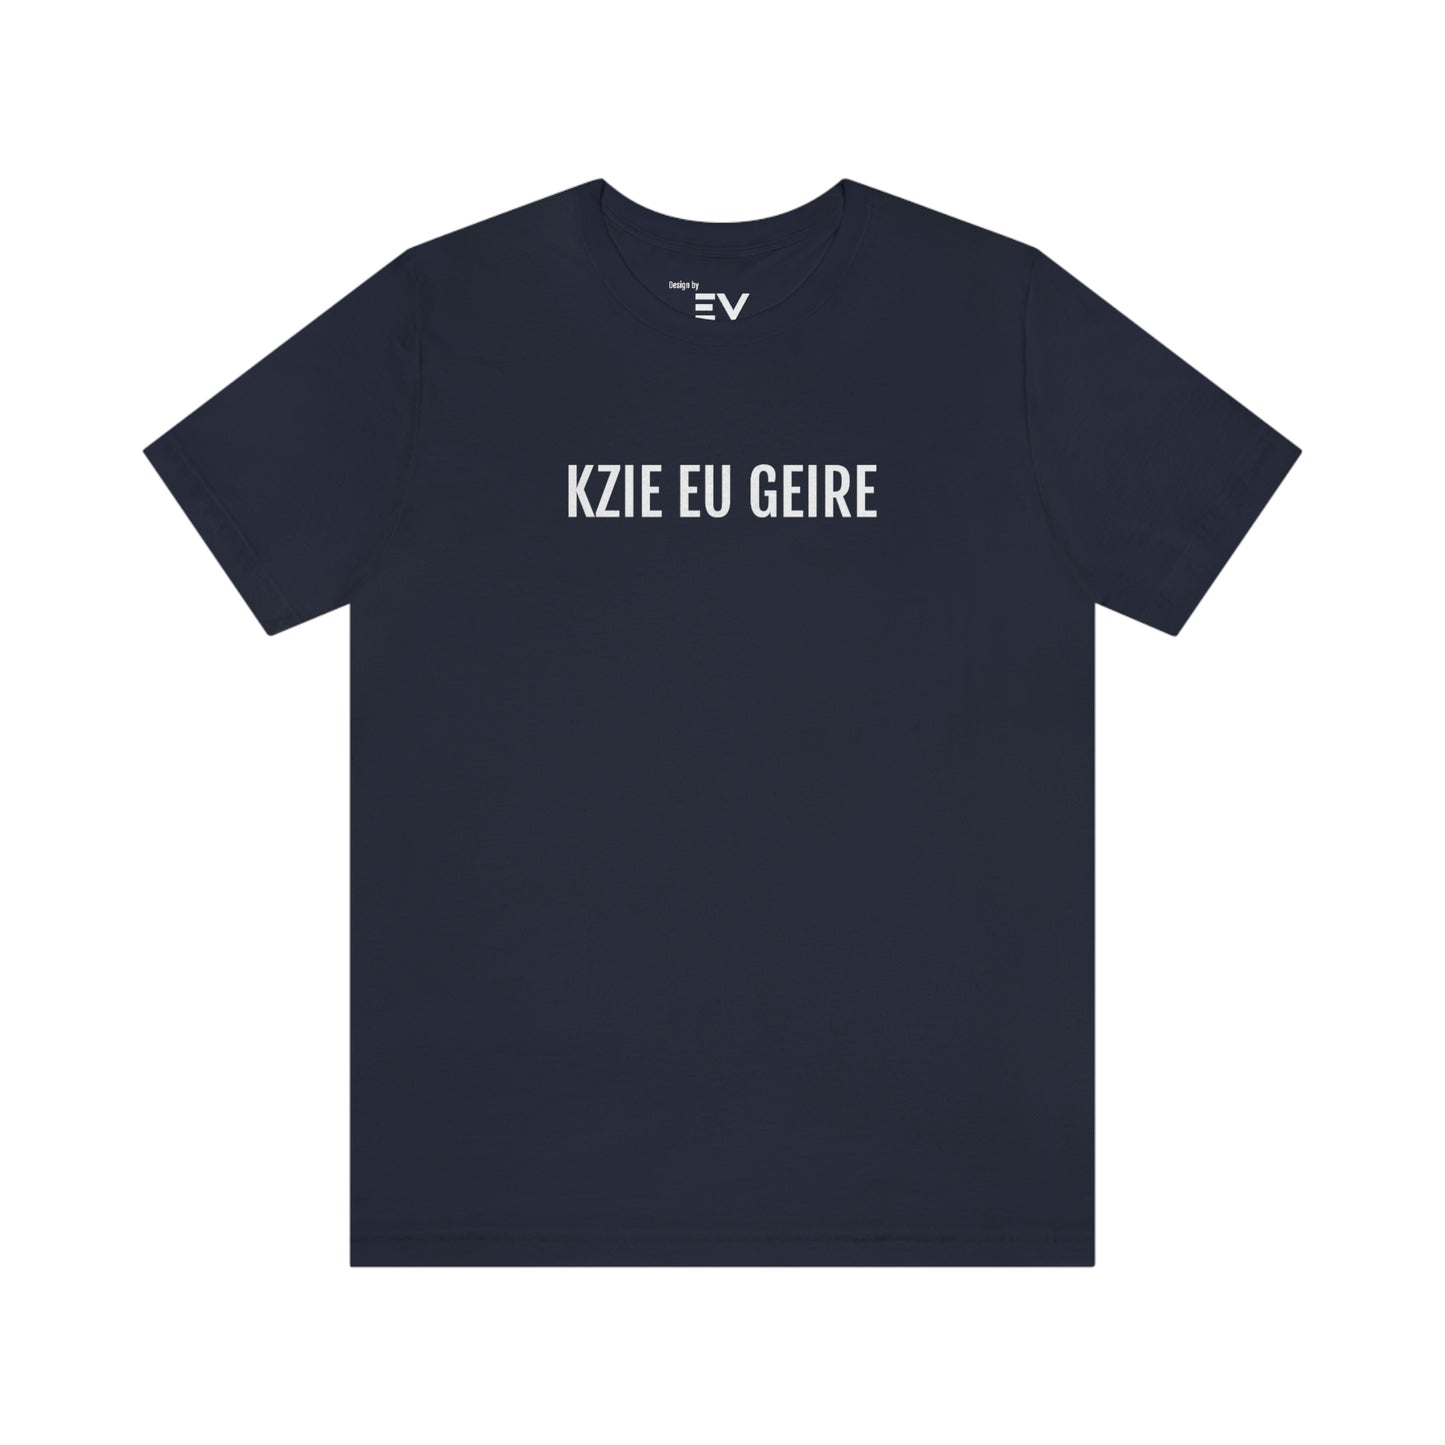 KZIE EU GEIRE | Unisex T-Shirt uit Oost-Vlaanderen